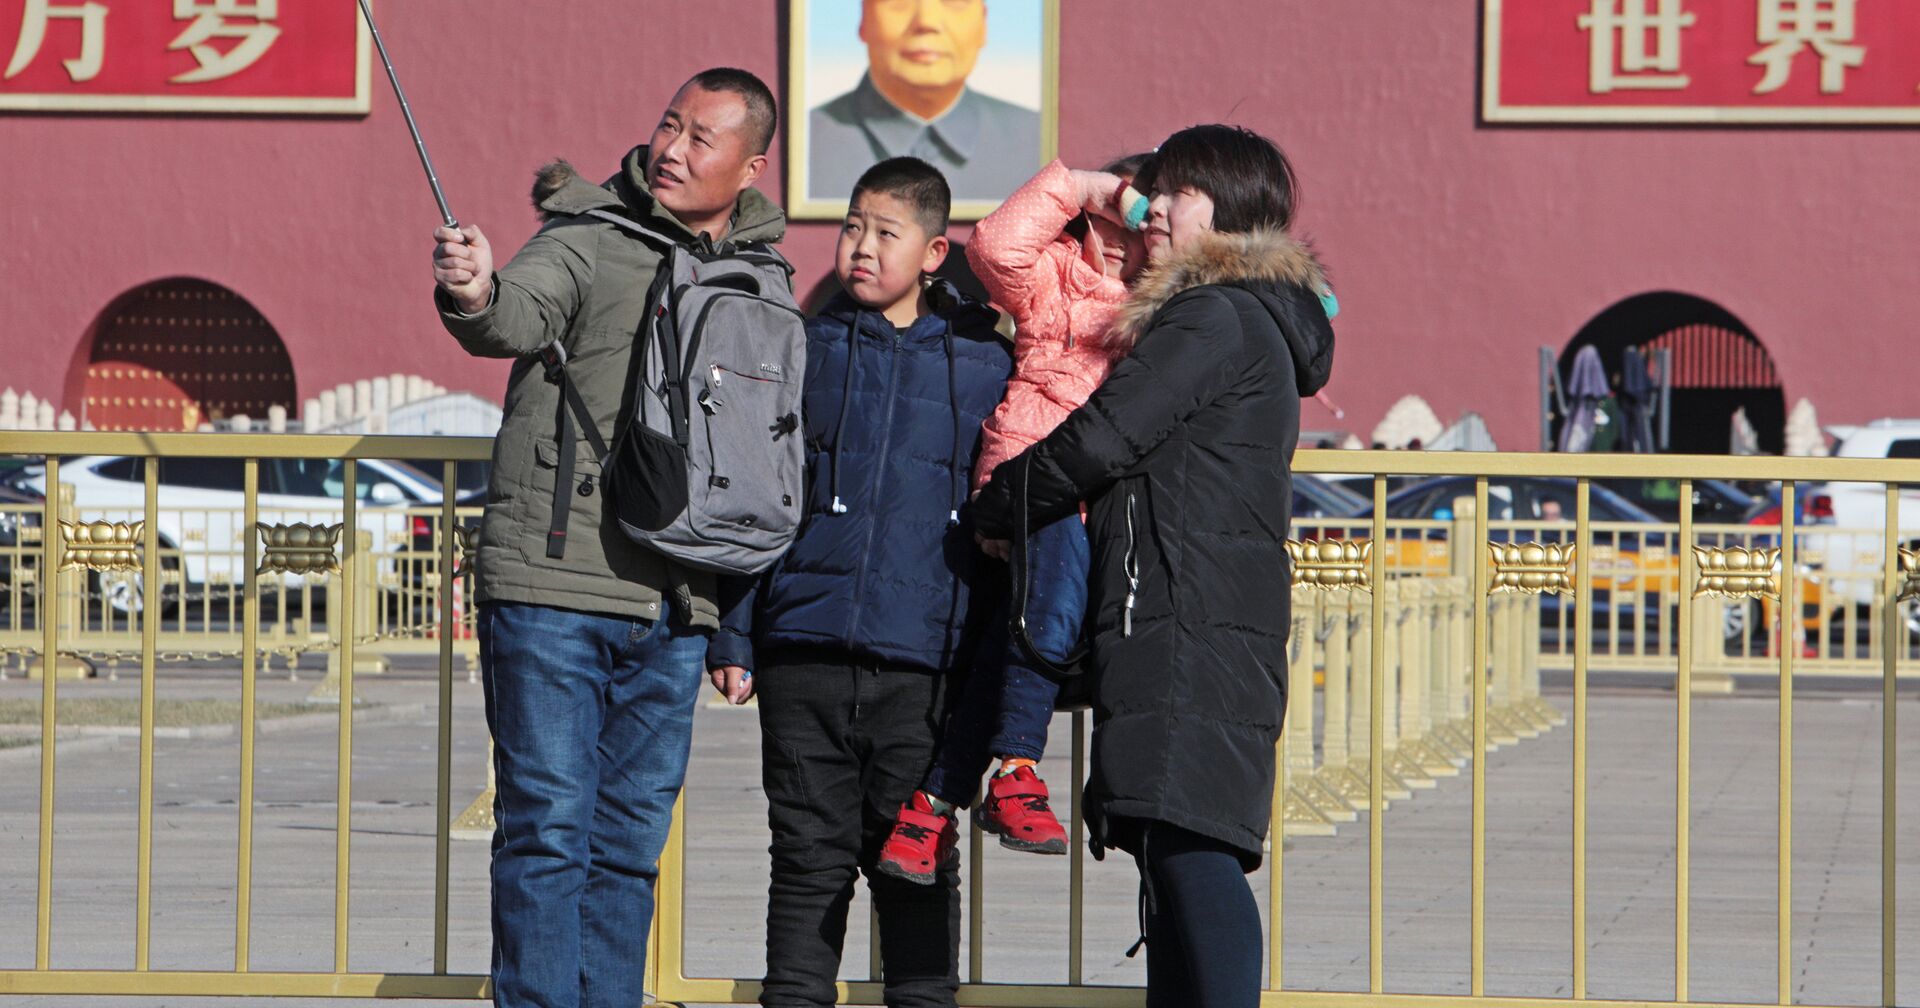 Семья фотографируется у портрета Мао Цзэдуна на центральной площади Пекина - Тяньаньмэнь - ИноСМИ, 1920, 28.01.2021